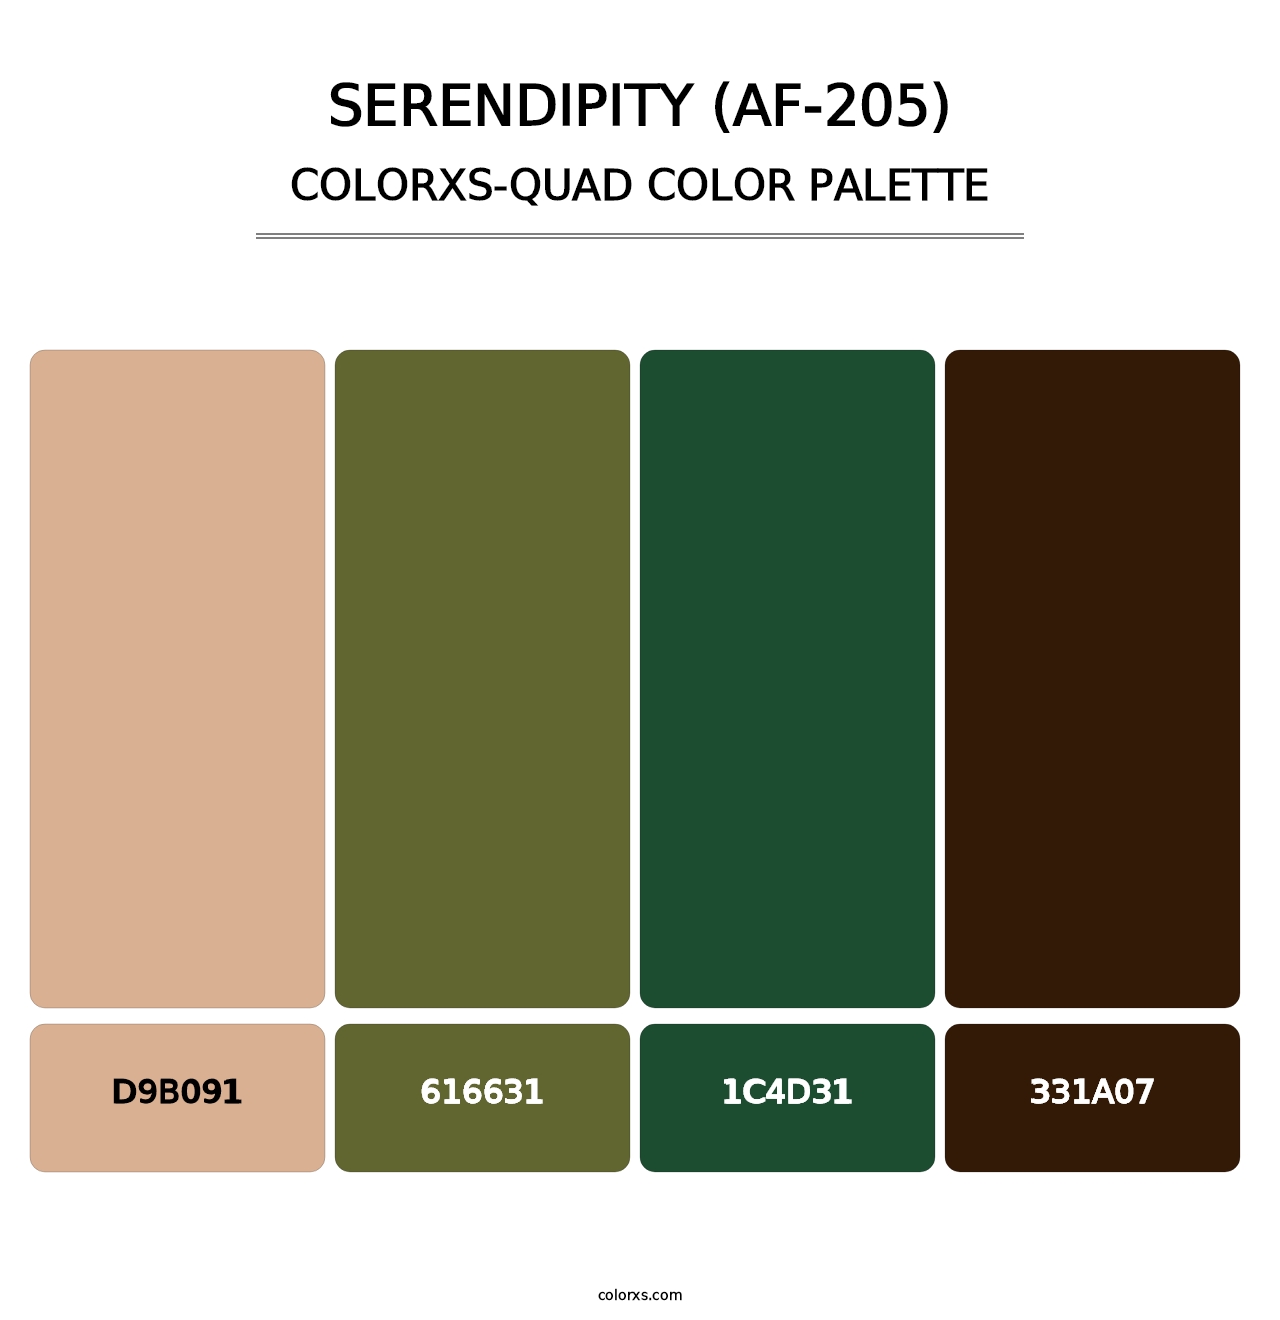 Serendipity (AF-205) - Colorxs Quad Palette